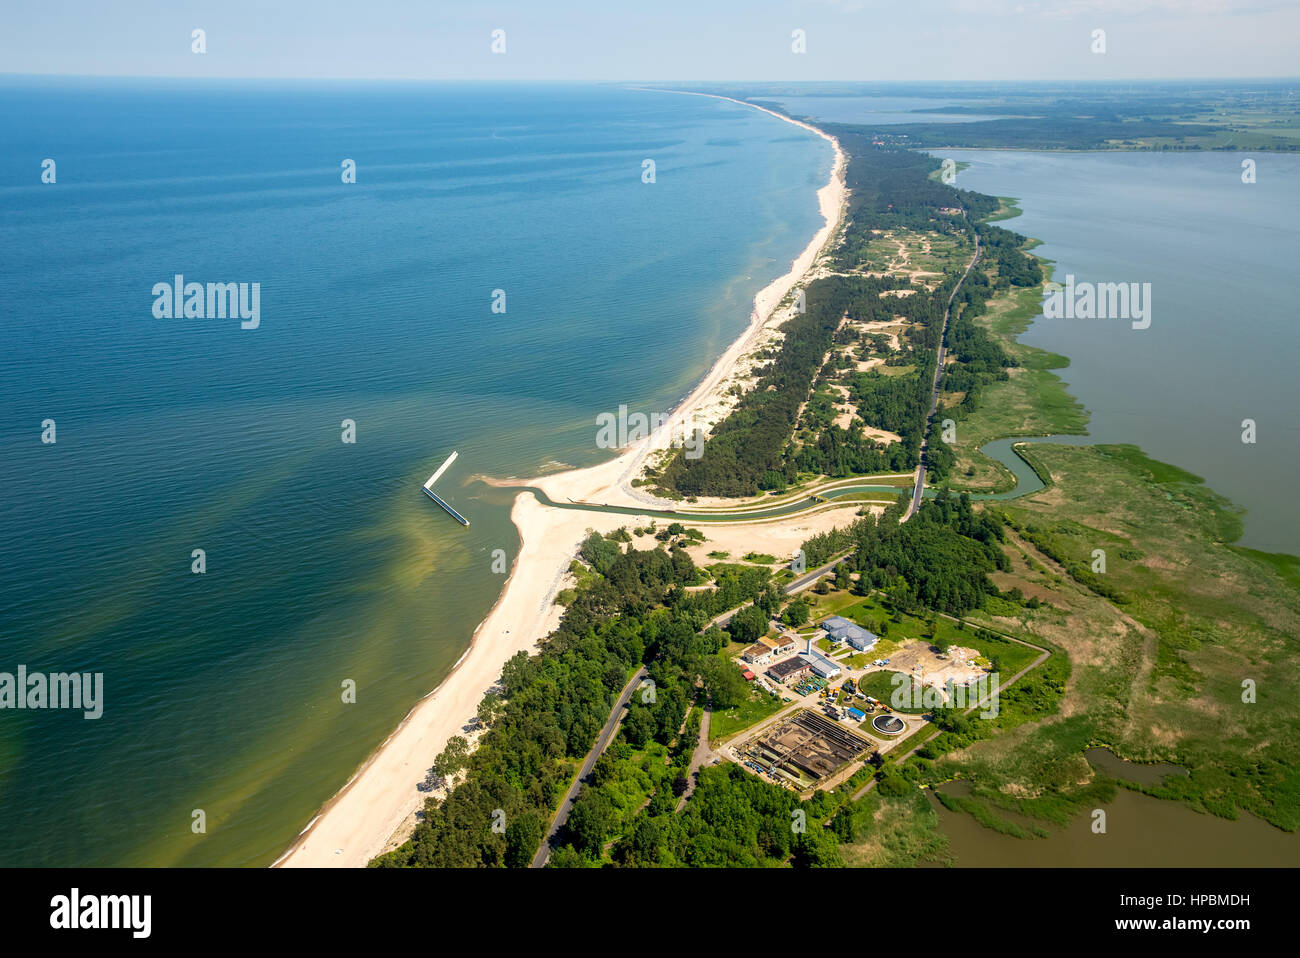 Unieście, nido, playa, laguna-como jamno, mermelada lago, laguna, costa báltica, Województwo zachodniopomorskie, Polonia Foto de stock